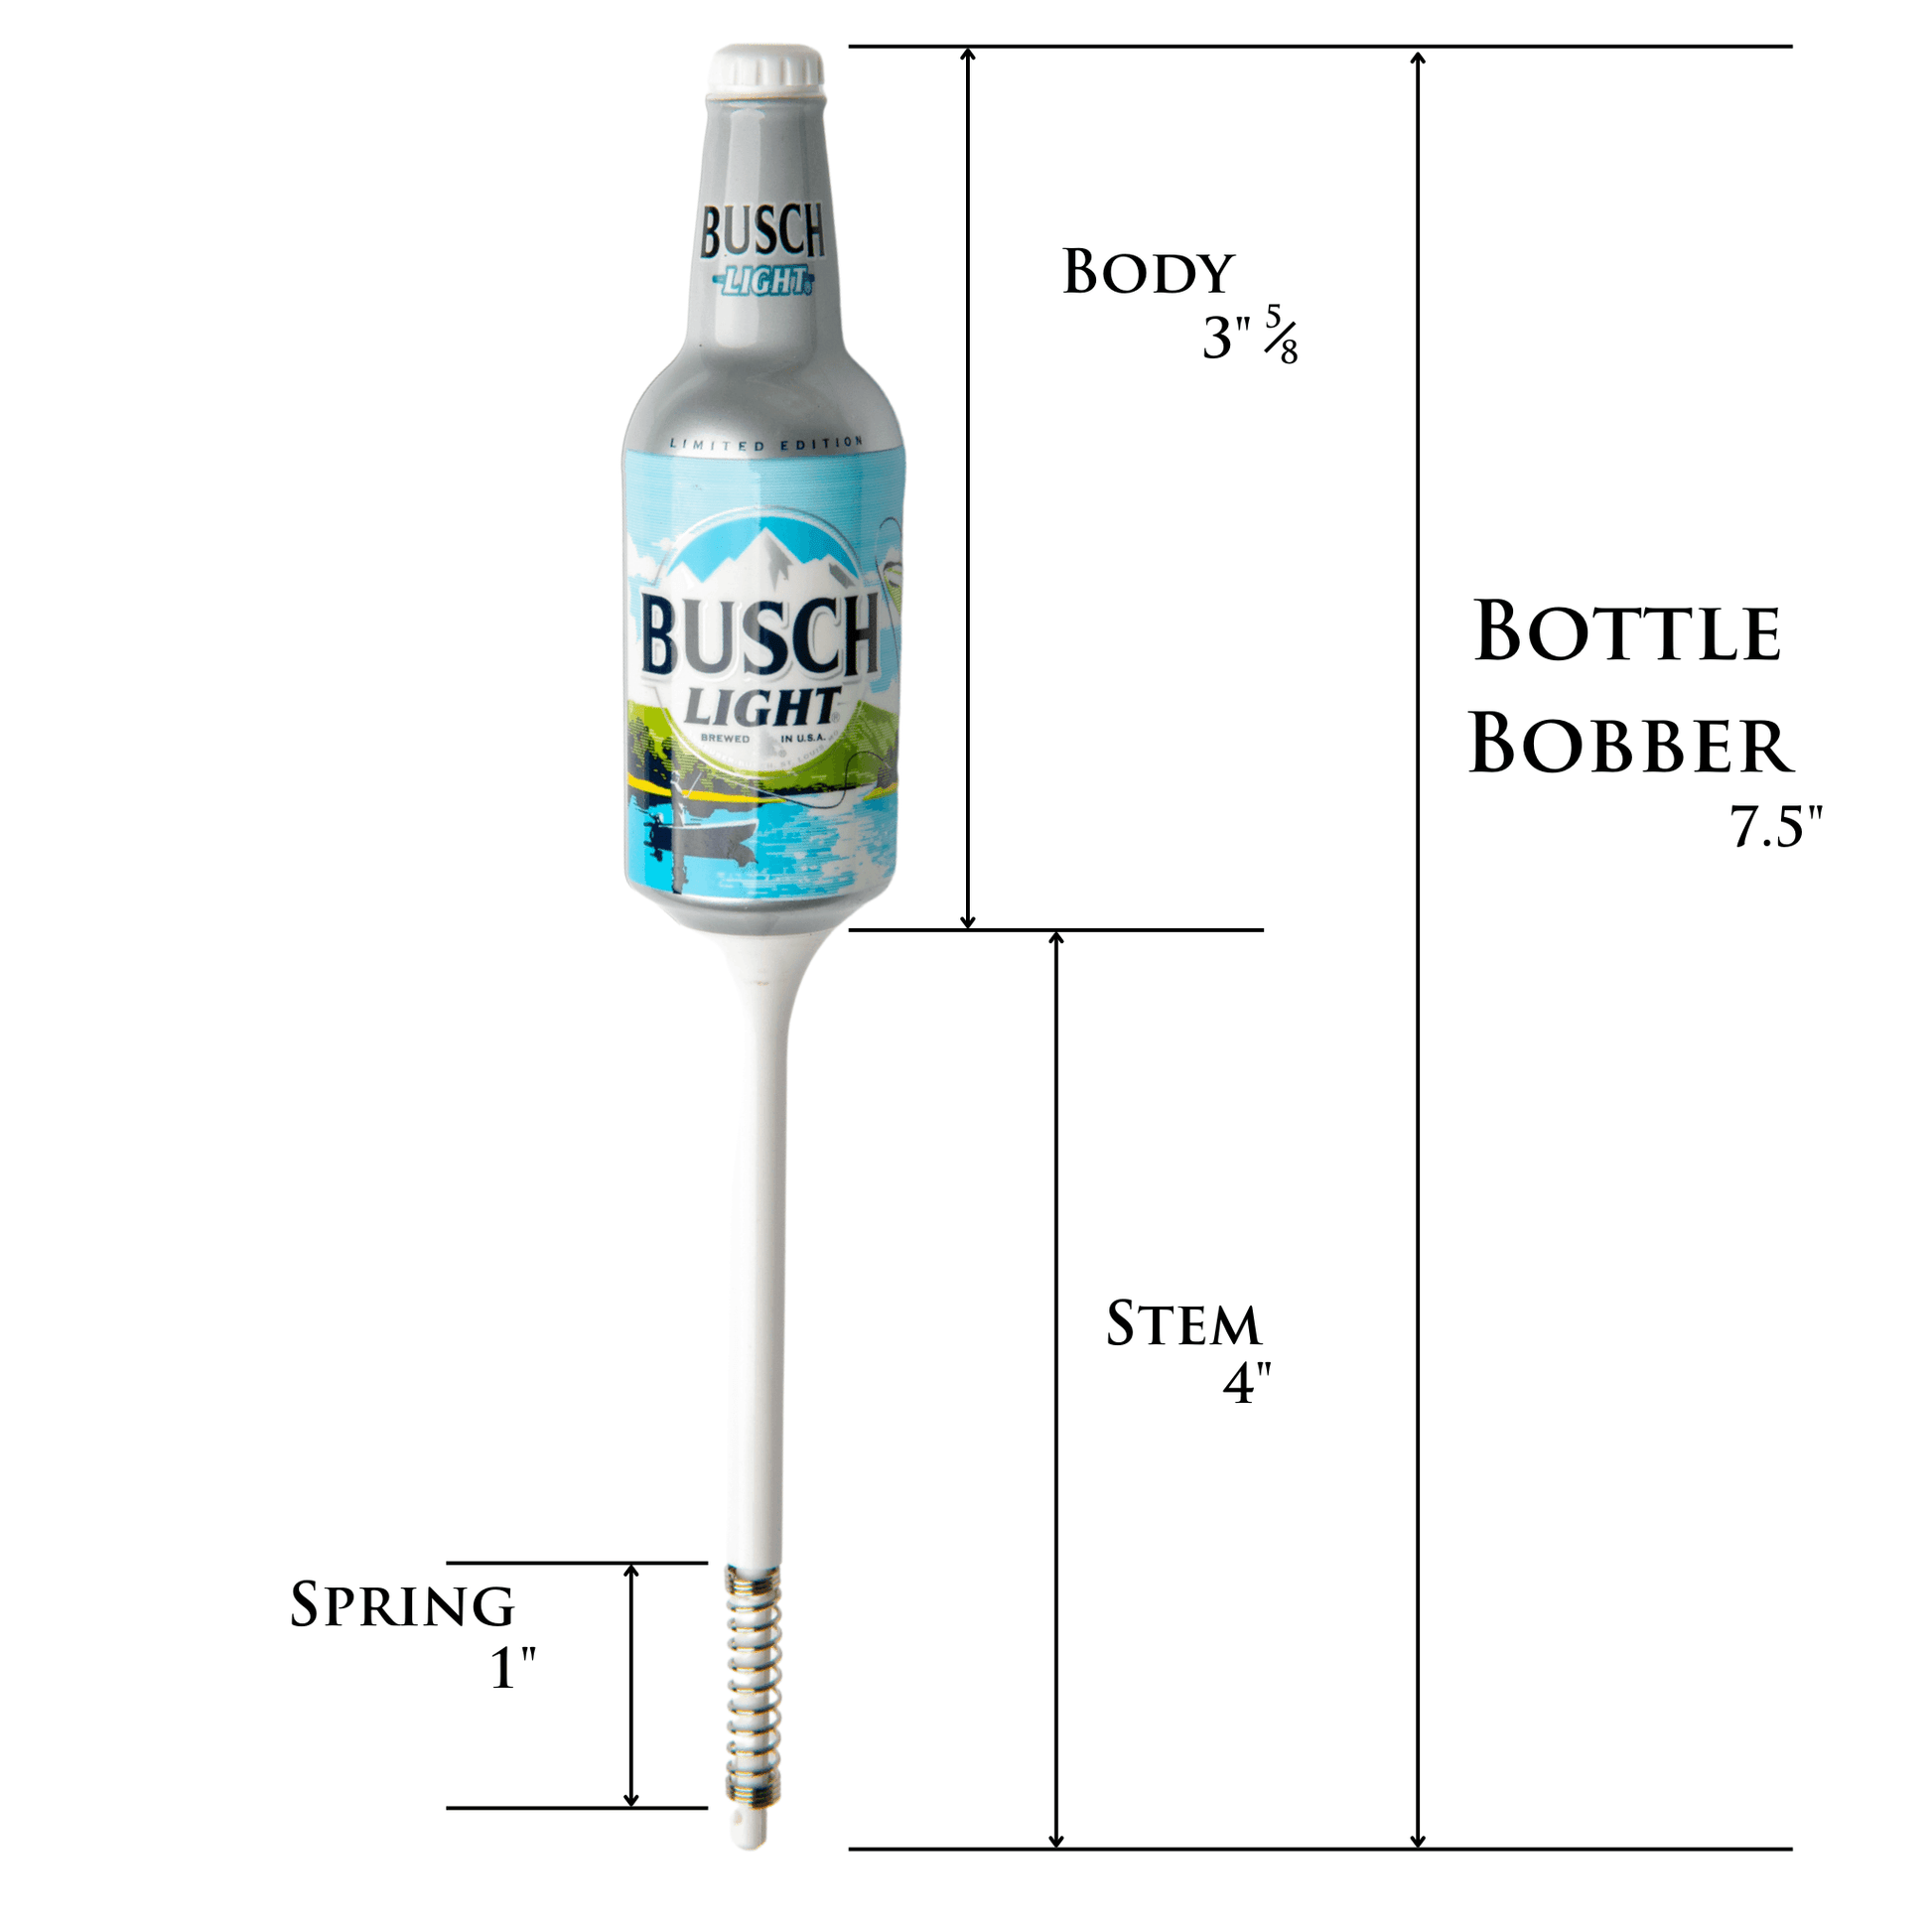 Busch light bottle bobber 7.5 inches long